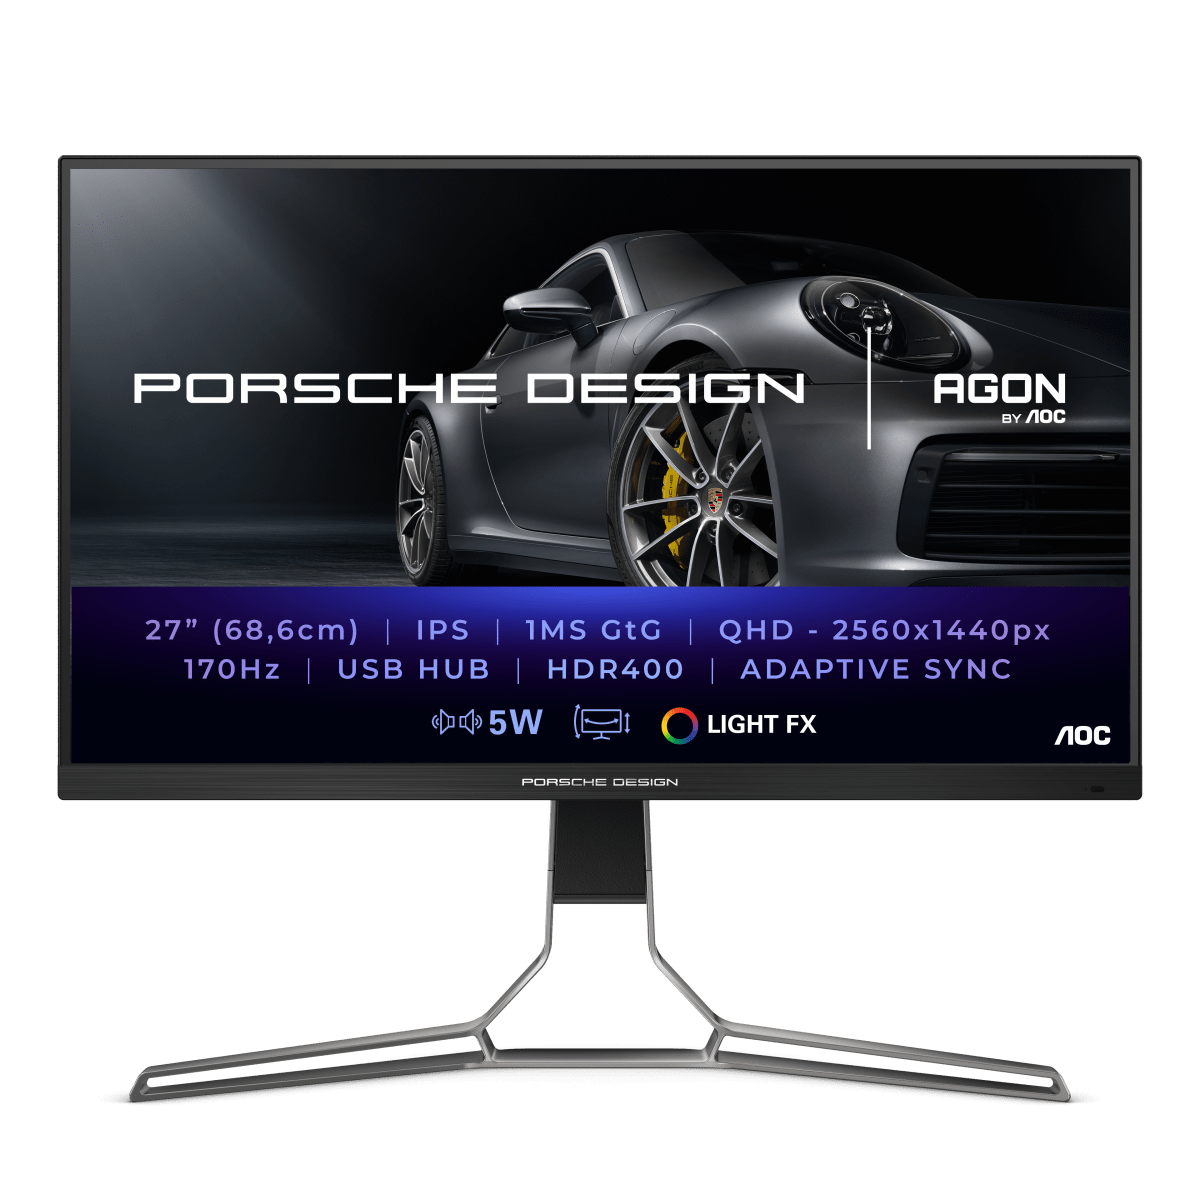 Игровой монитор AOC AGON PRO PD27S PORSCHE DESIGN в официальном интернет магазине AGONBYAOC.ru (AOC Россия)